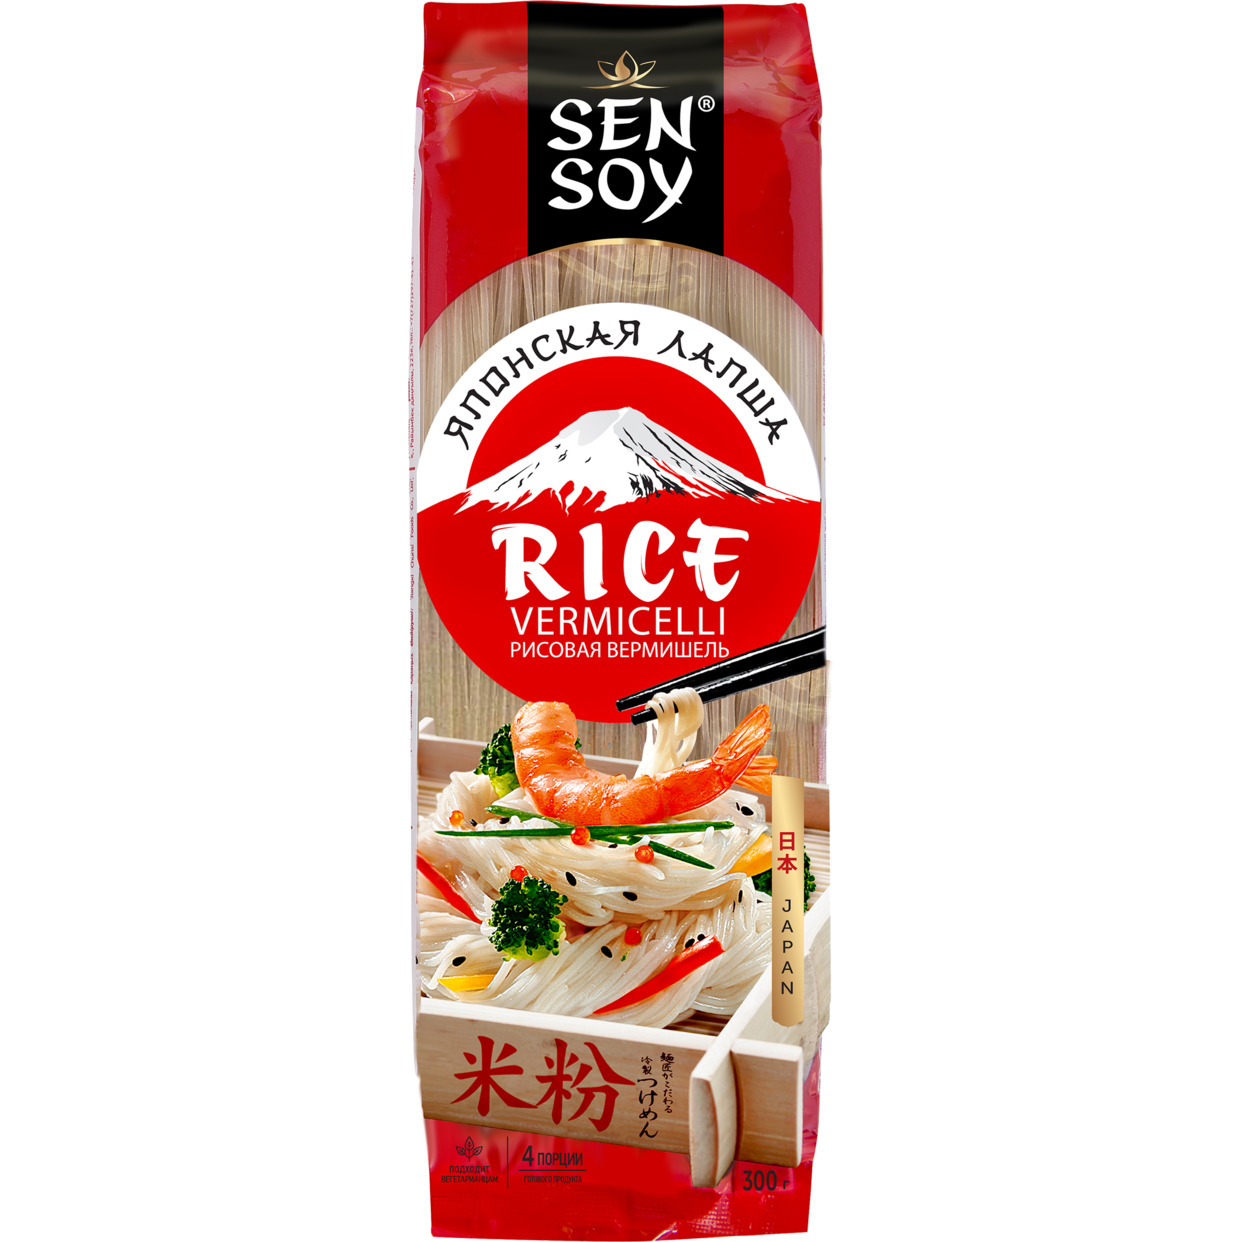 Лапша Sen Soy Premium Rice Vermicelli рисовая 300г по акции в Пятерочке